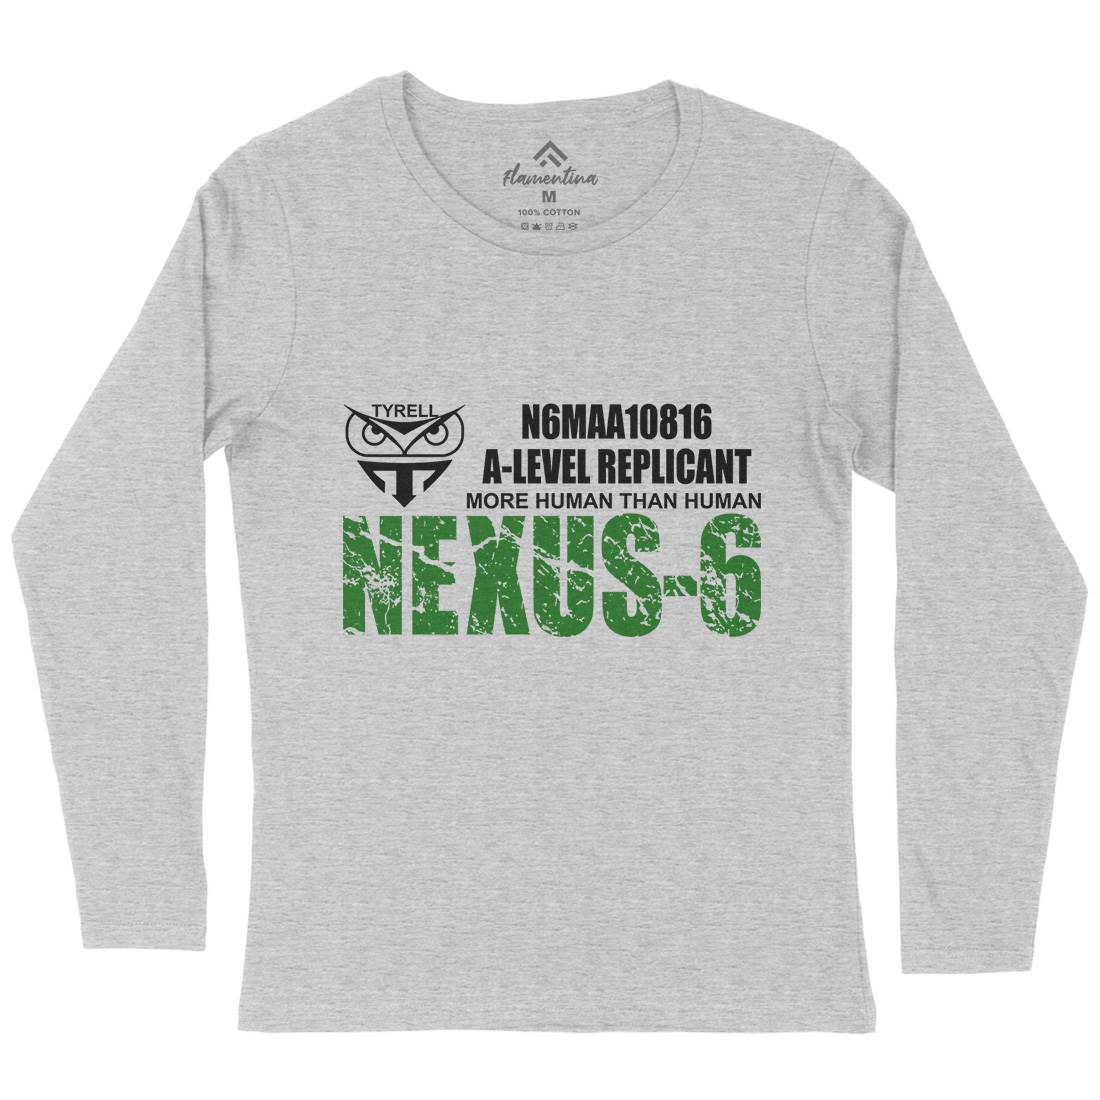 Nexus-6 Womens Long Sleeve T-Shirt Space D434